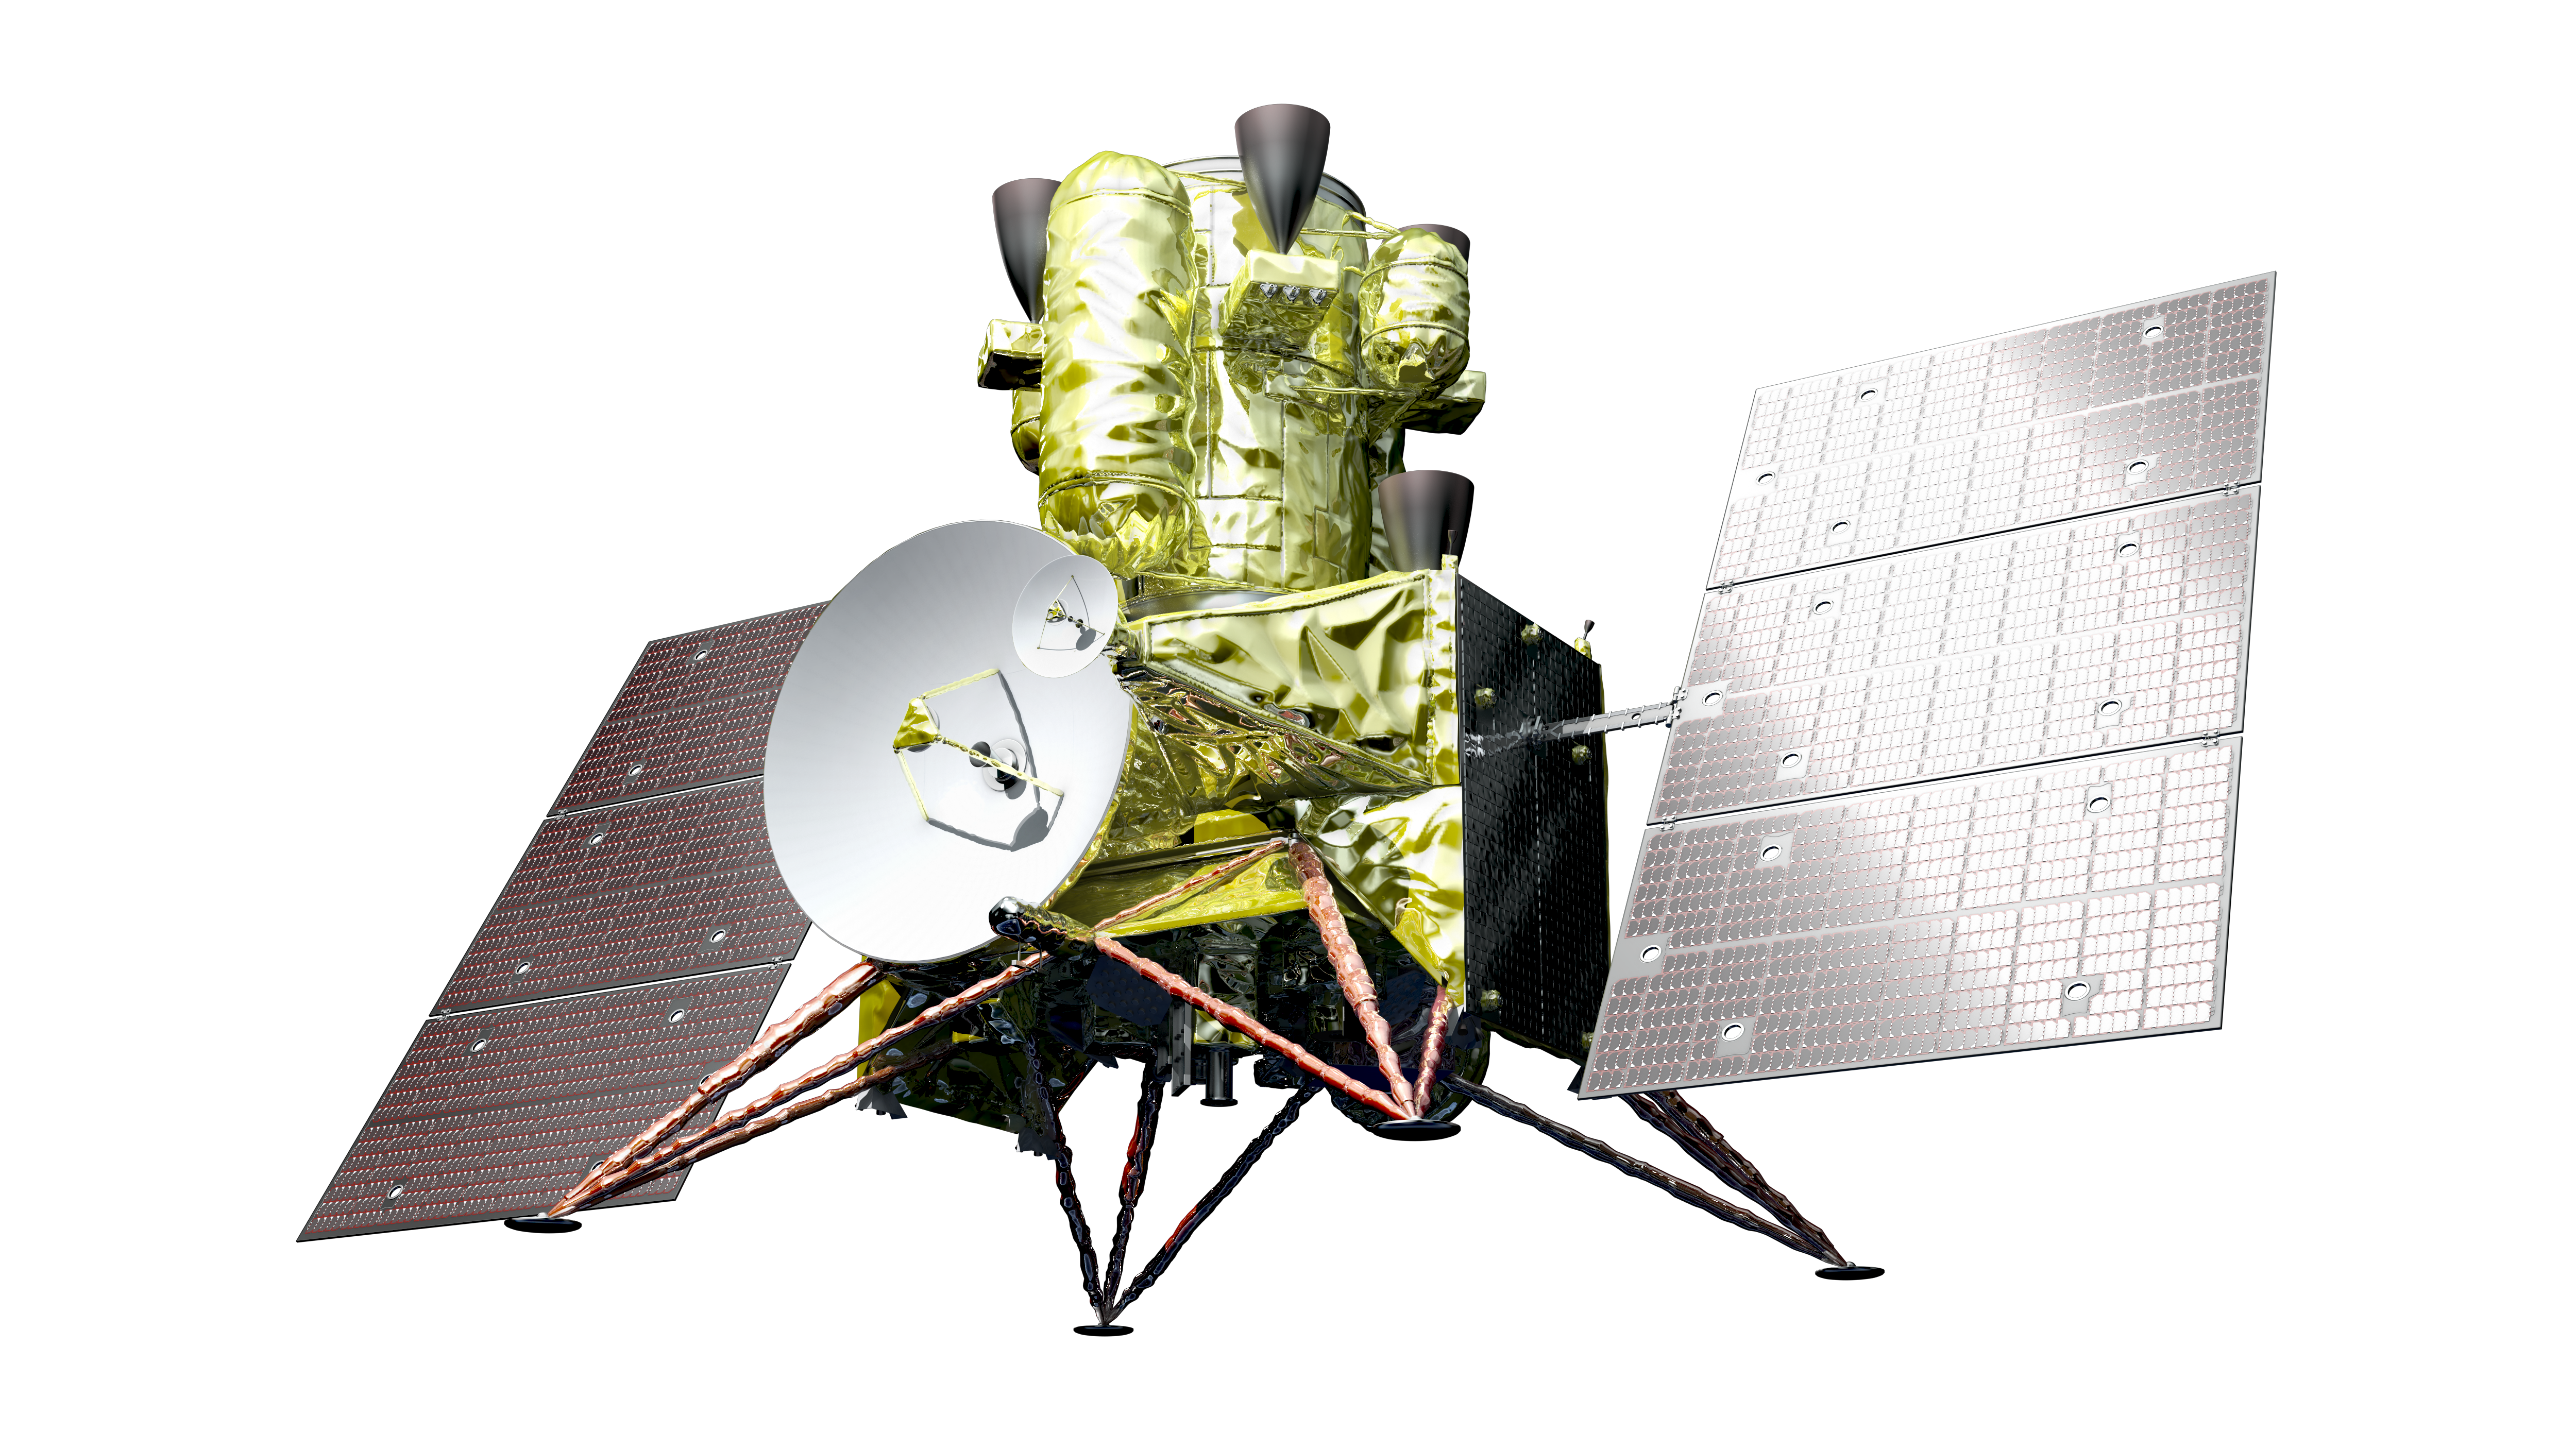 MMX spacecraft (no background)